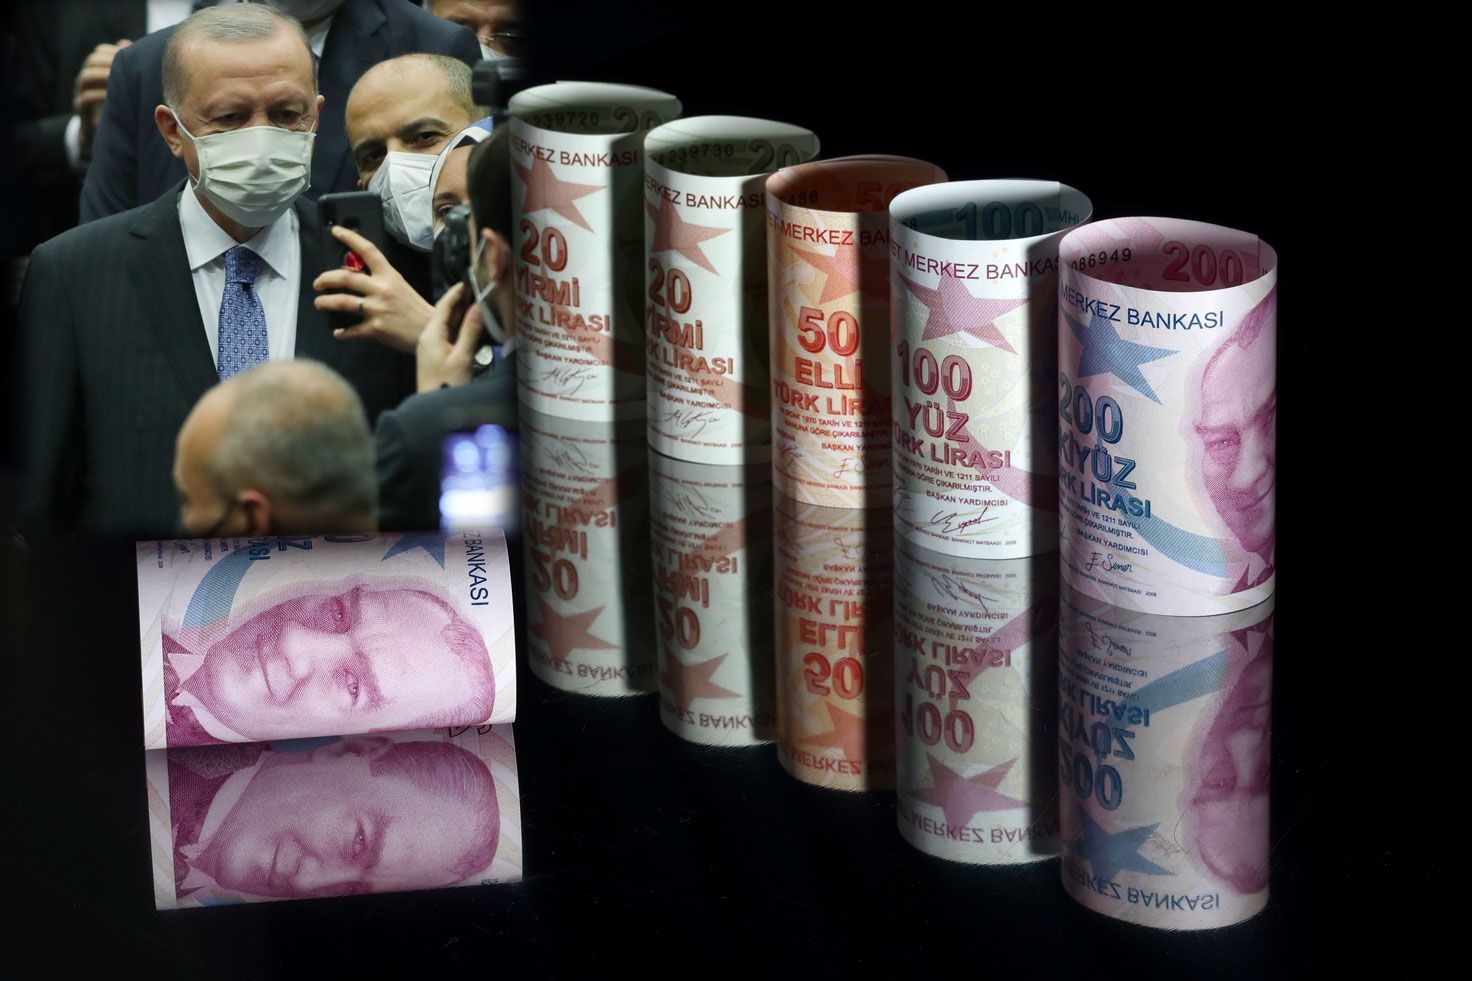 Τουρκία: «Πνίγεται» στη νομισματική καταιγίδα ο Ερντογάν – Σε απόγνωση οι πολίτες, μισθοί γίνονται «ψίχουλα»